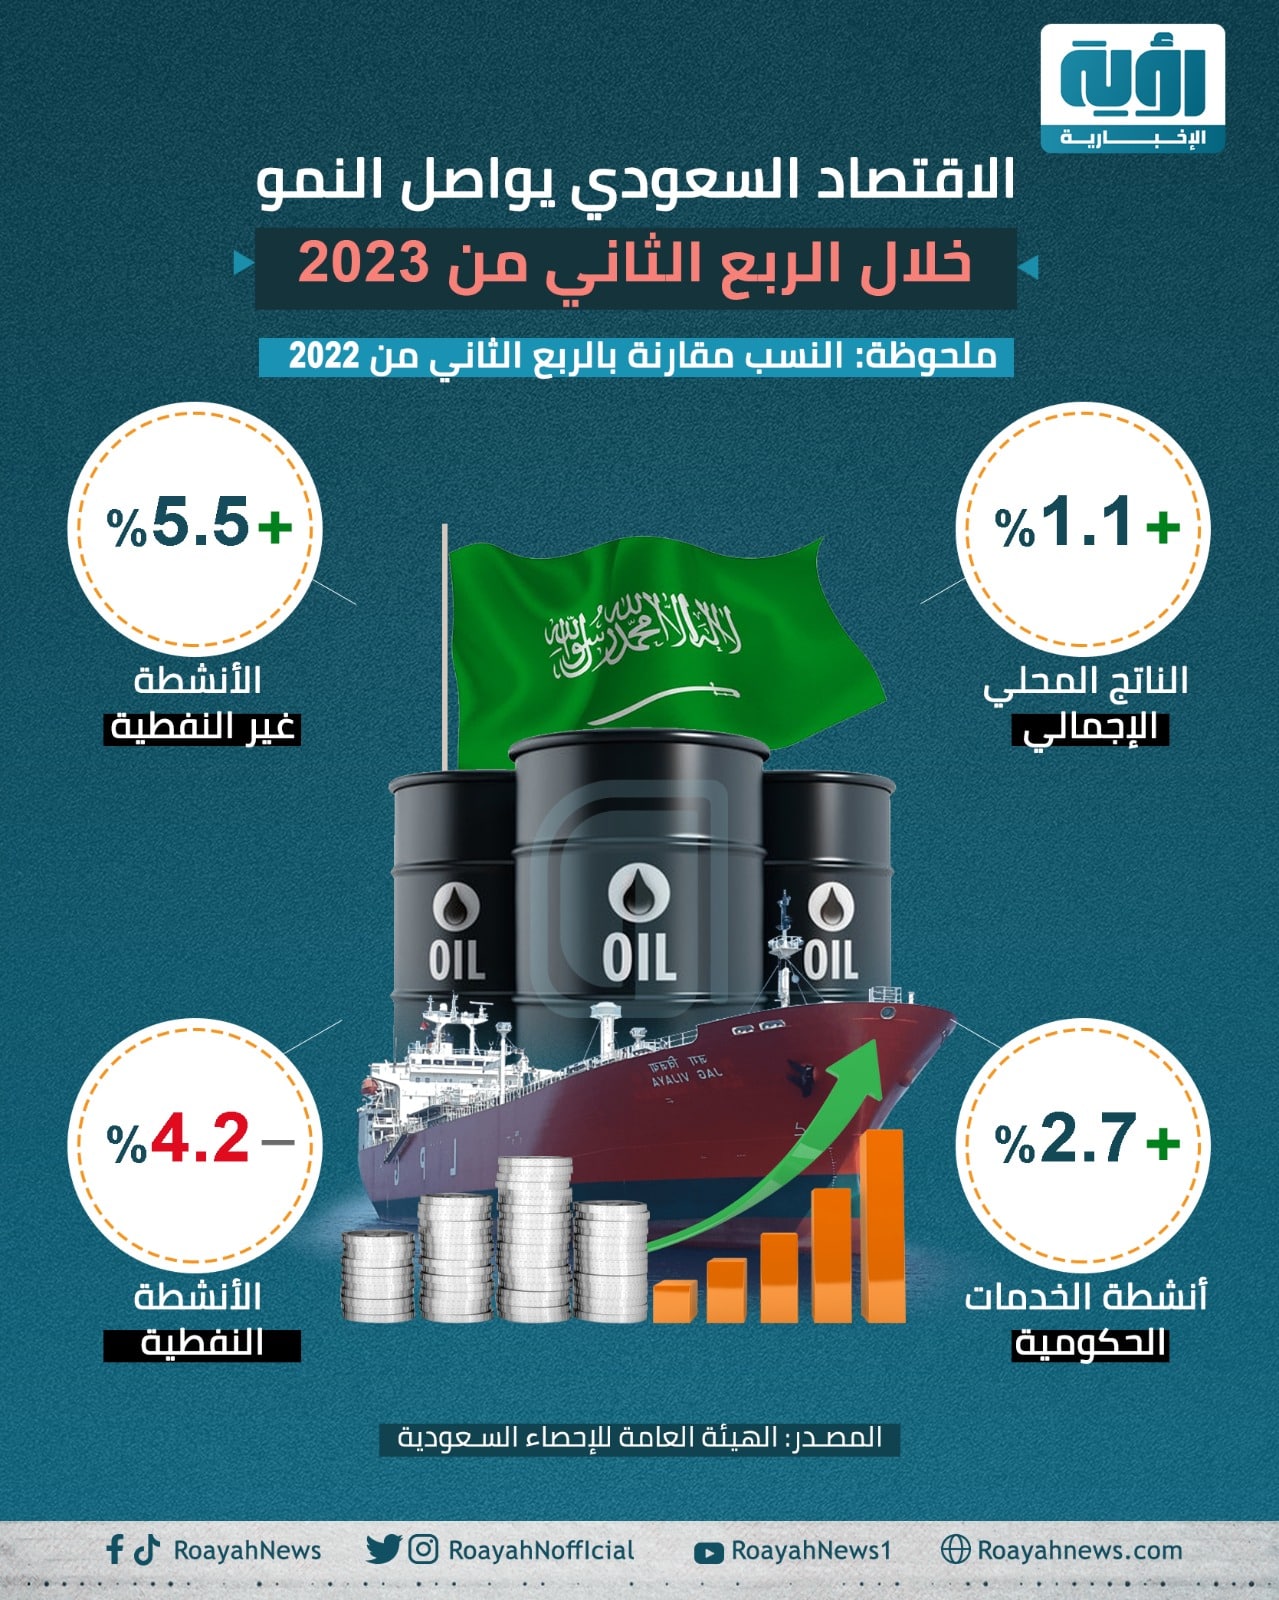 الاقتصاد السعودي يواصل النمو خلال الربع الثاني من 2023